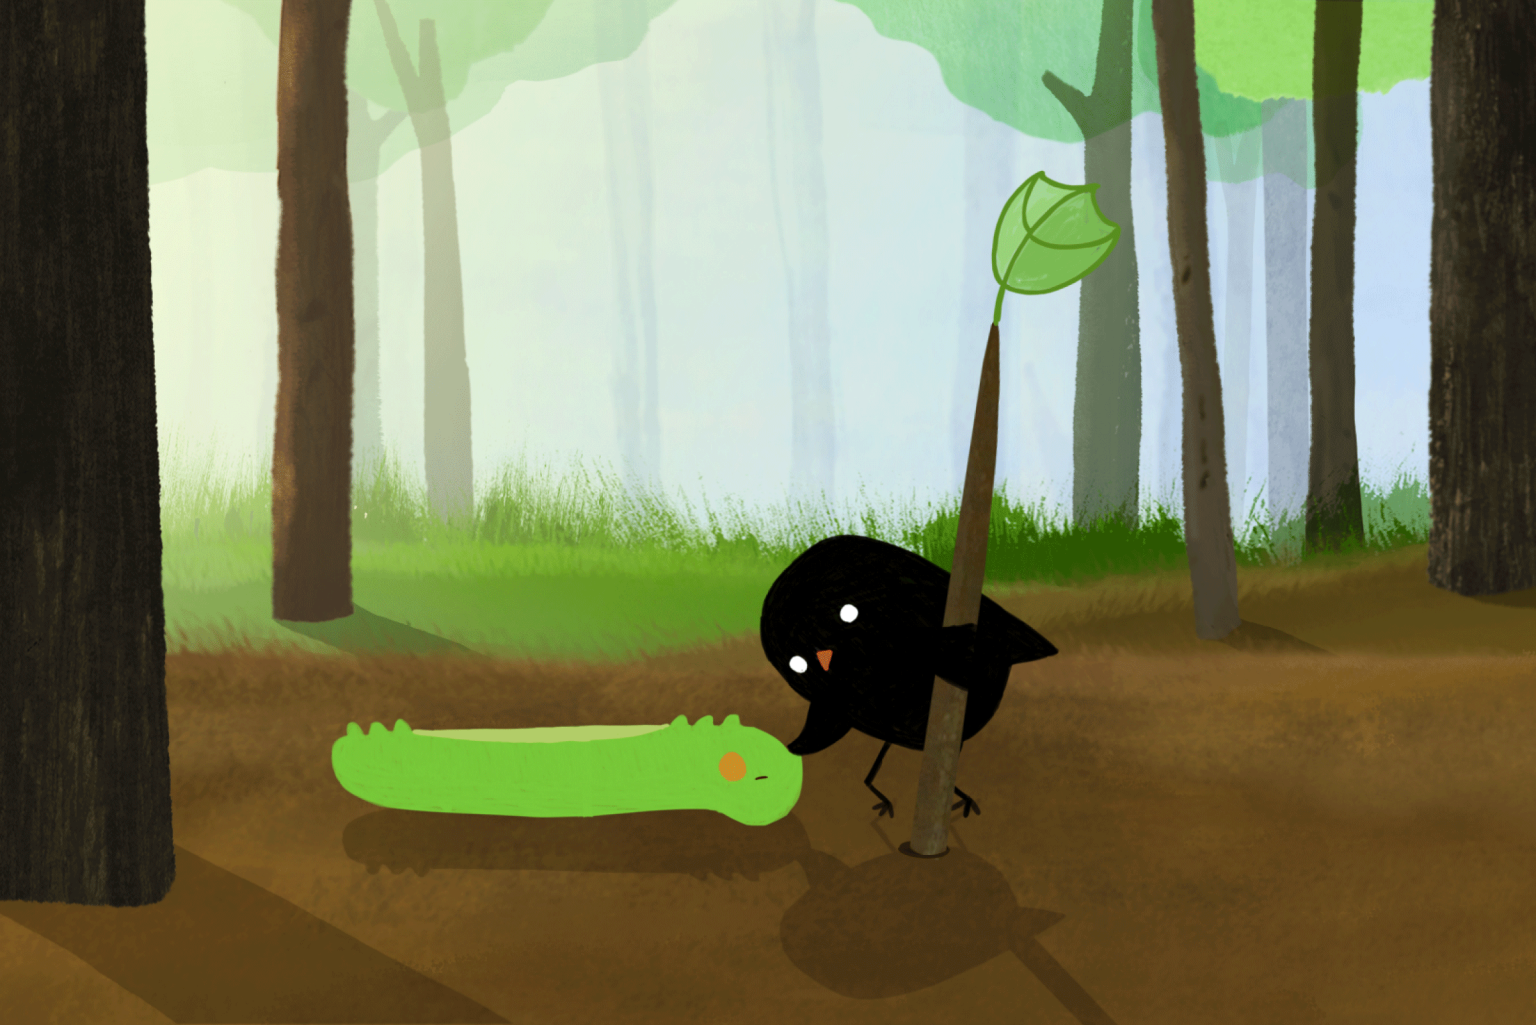 Ein kleiner schwarzer Vogel streichelt eine grüne Raupe auf einer Lichtung im Wald.